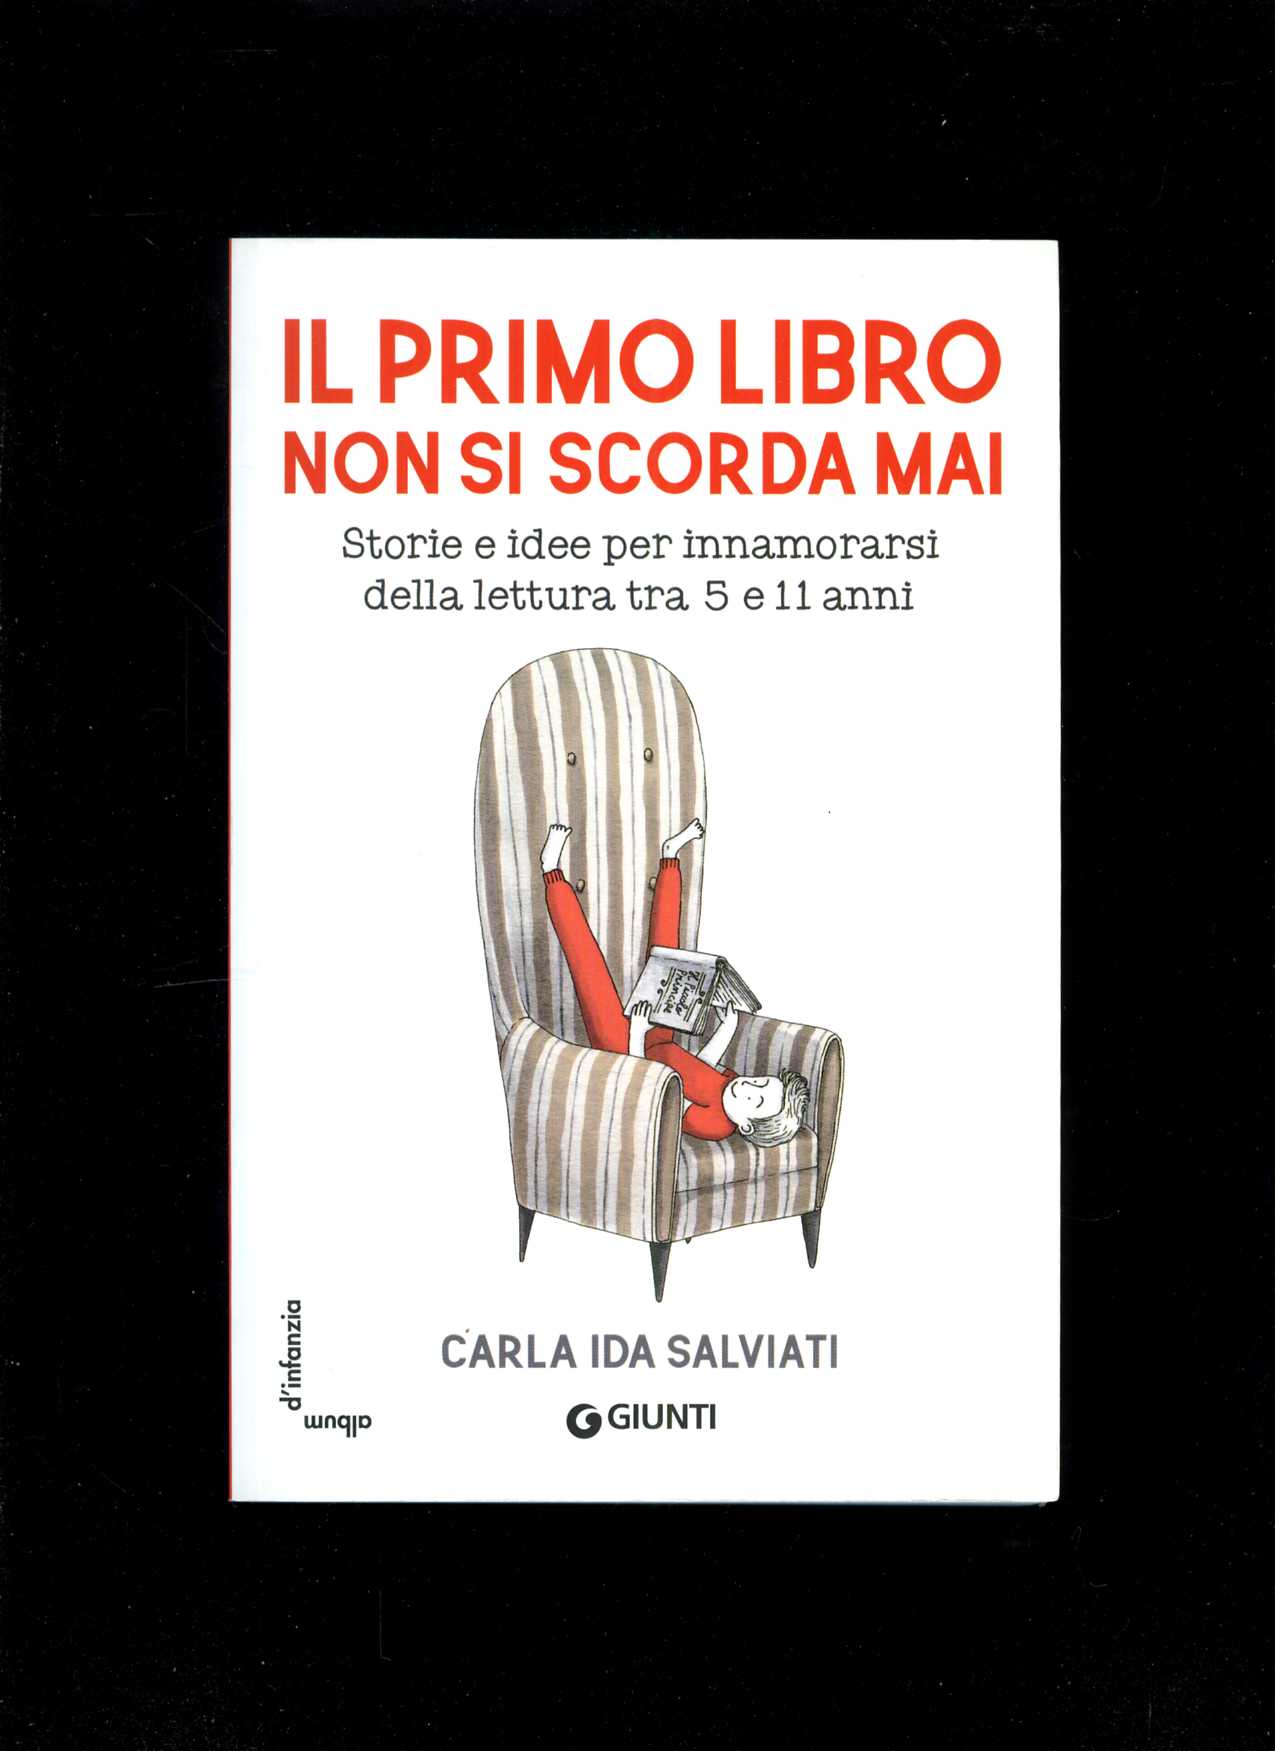 Il primo libro non si scorda mai (Carla Ida Salviati)